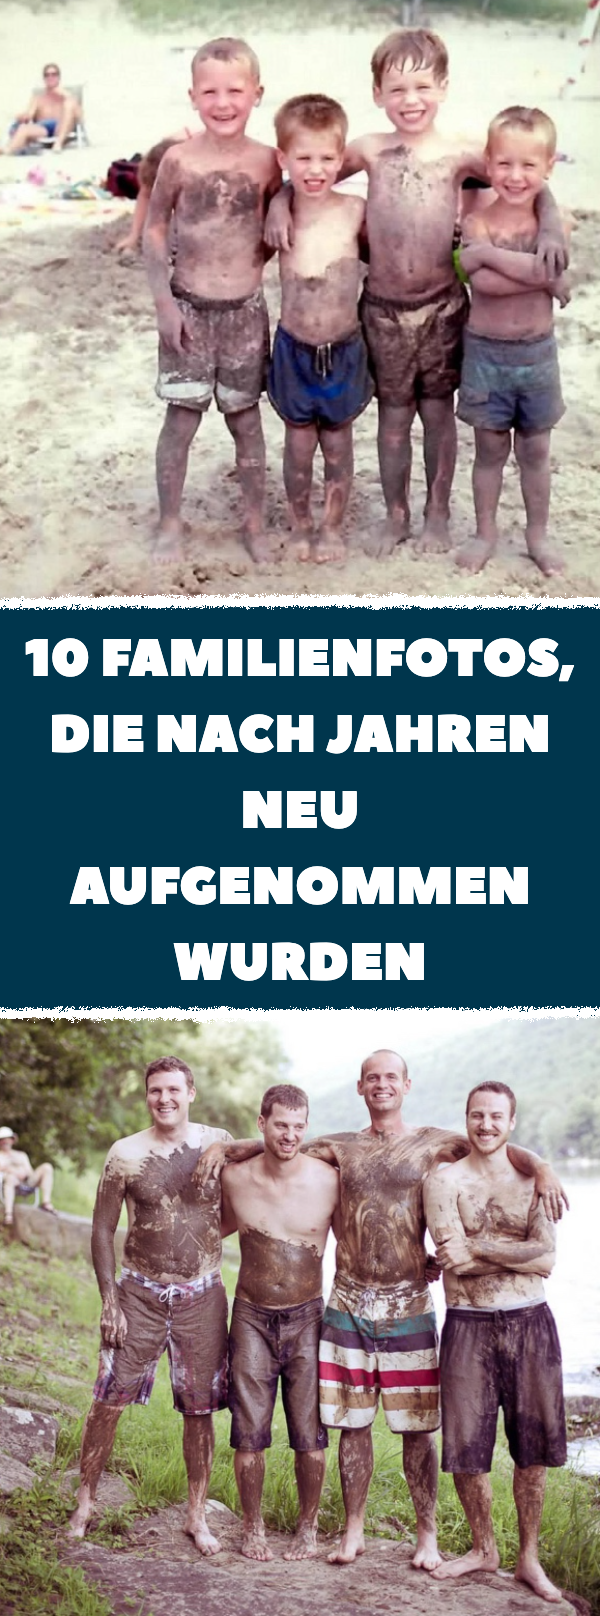 10 Familienfotos, die nach Jahren neu aufgenommen wurden